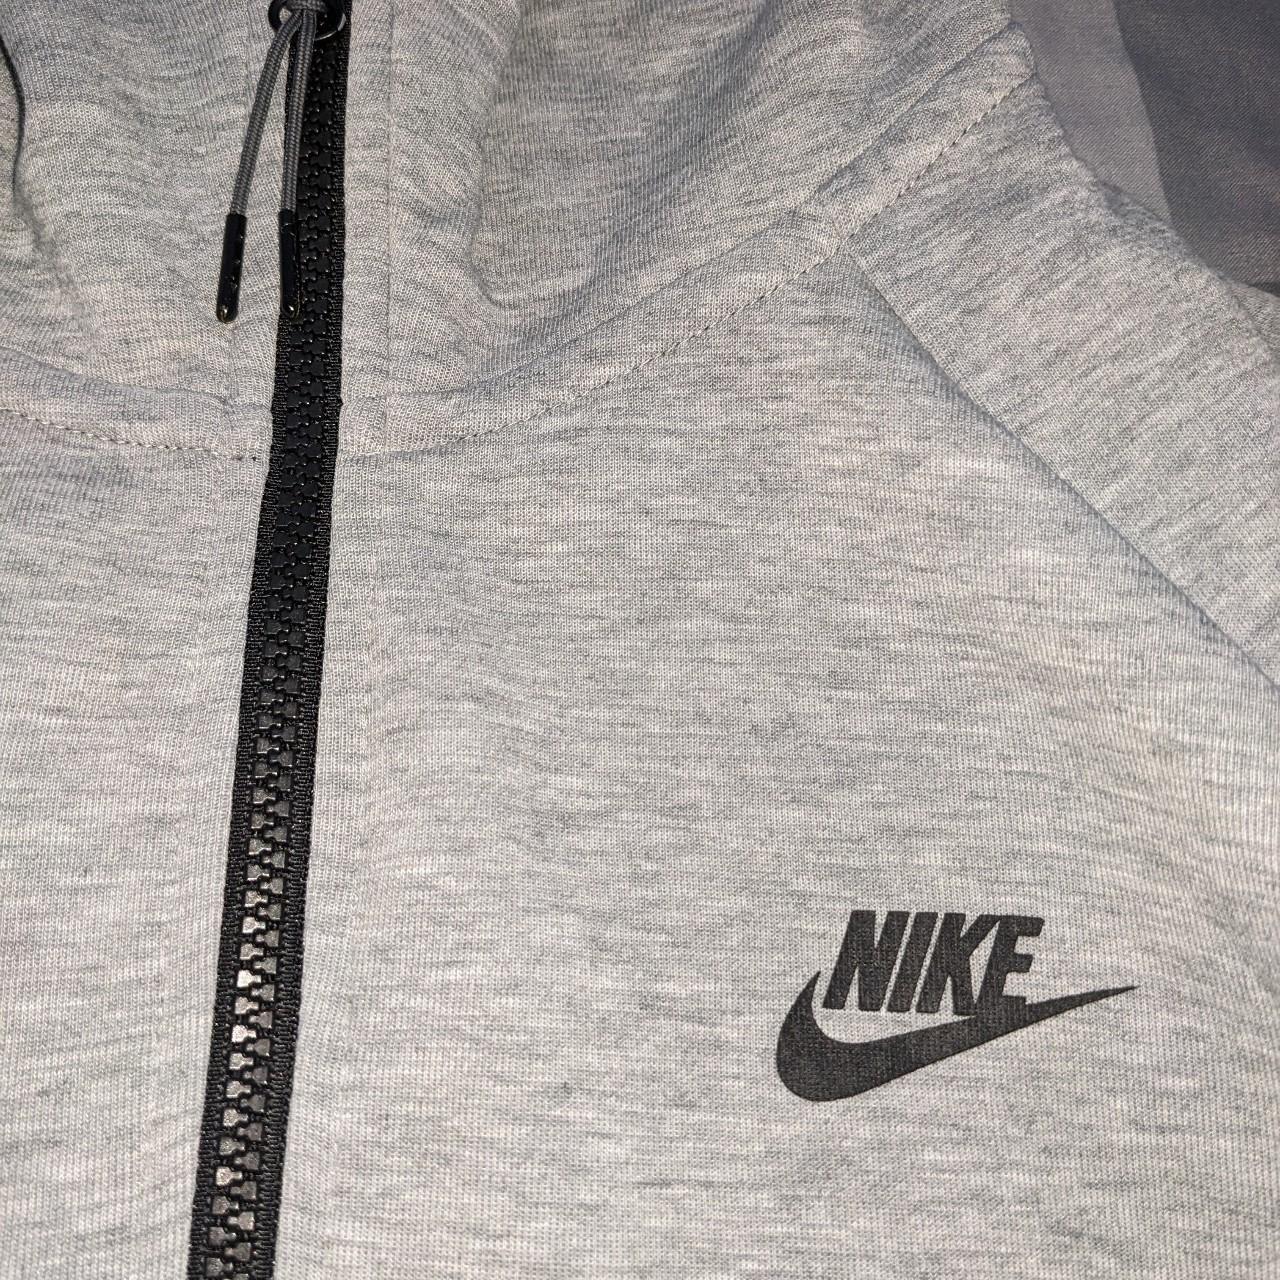 Nike tech fleece jacket hoodie. Old version. Grey... - Depop